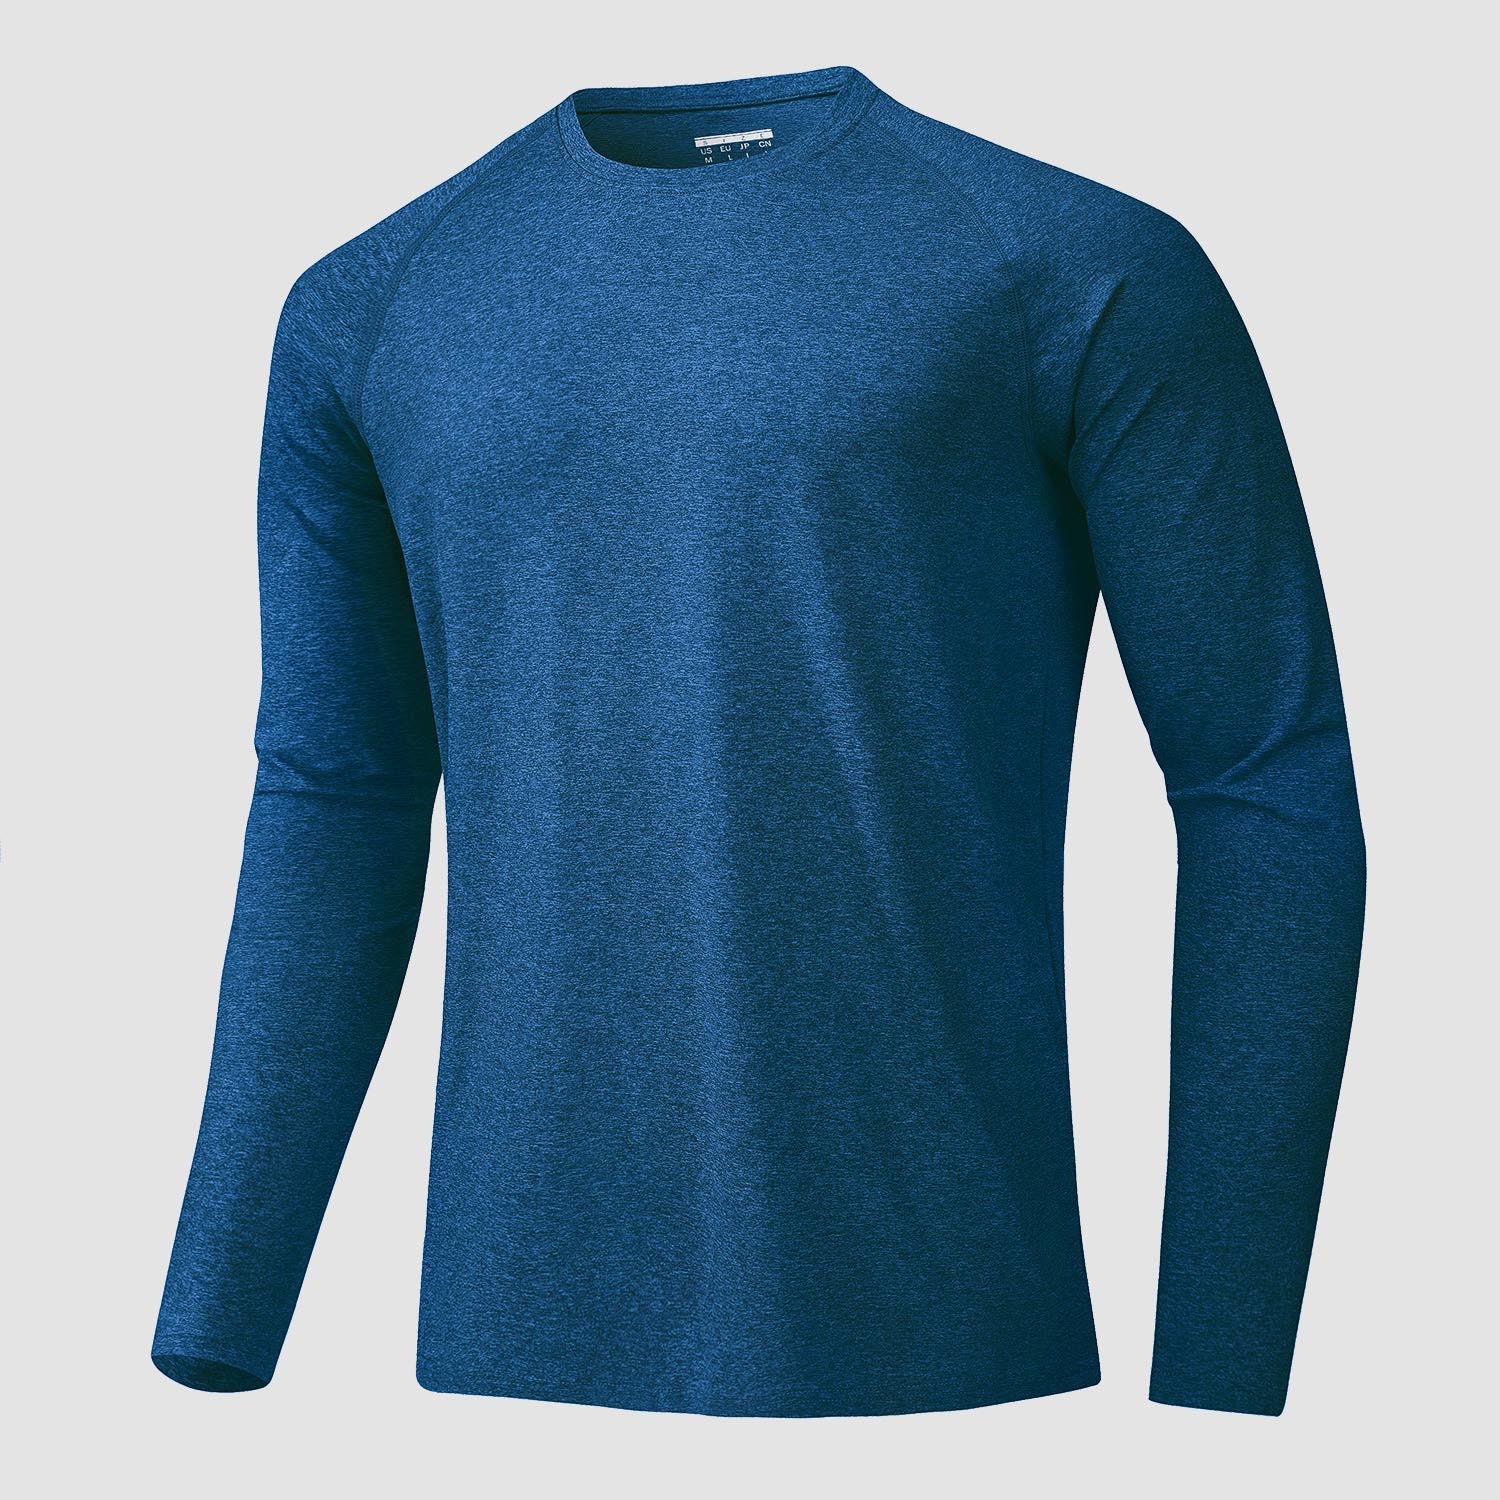 UV sport shirts for men